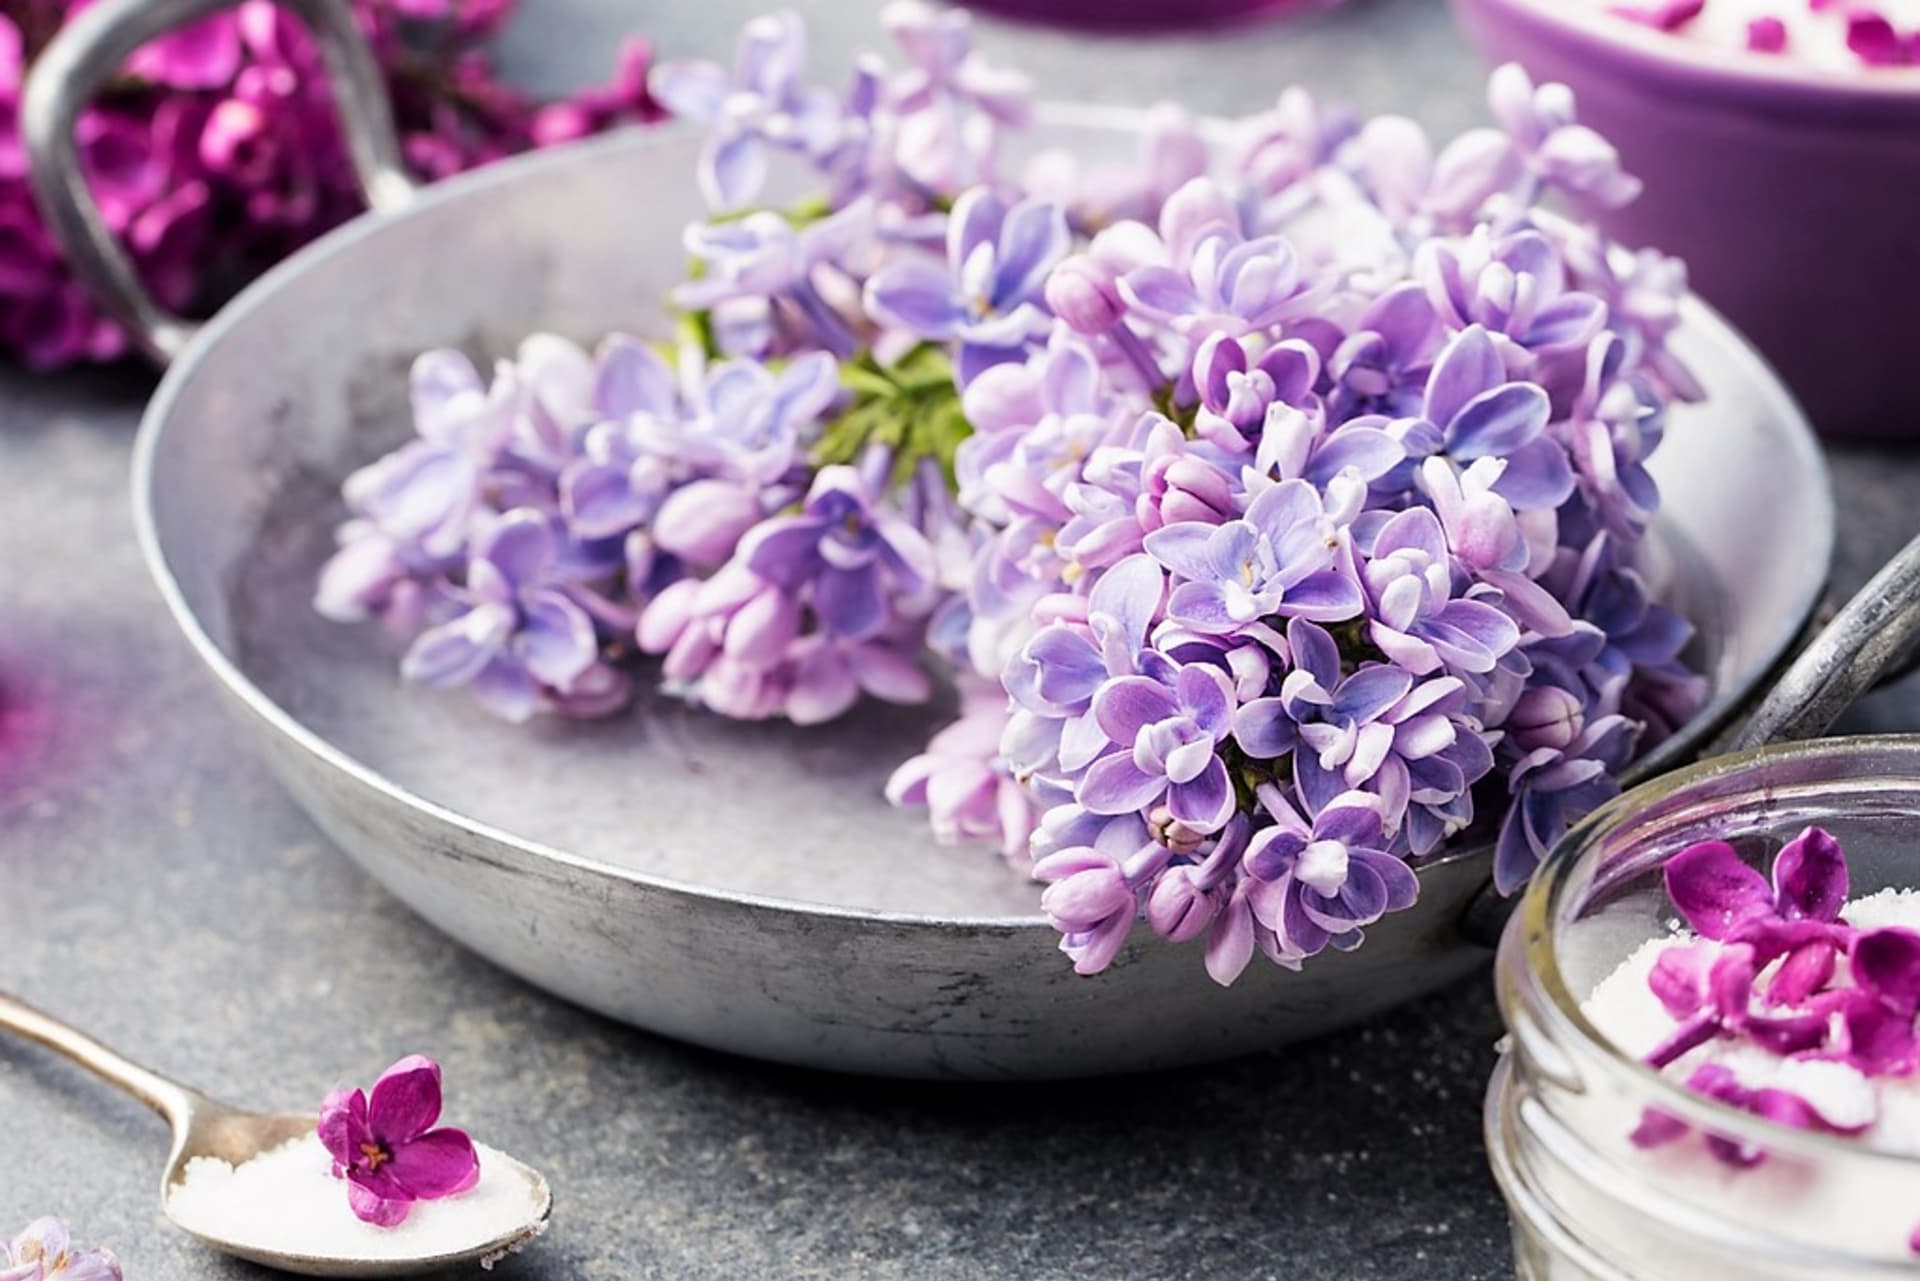 Květy šeříku patří jako například lichořeřišnice či fialka mezi jedlé květy, které ozdobí nejrůznější pokrmy, především dezerty, zmrzlinu a saláty. 